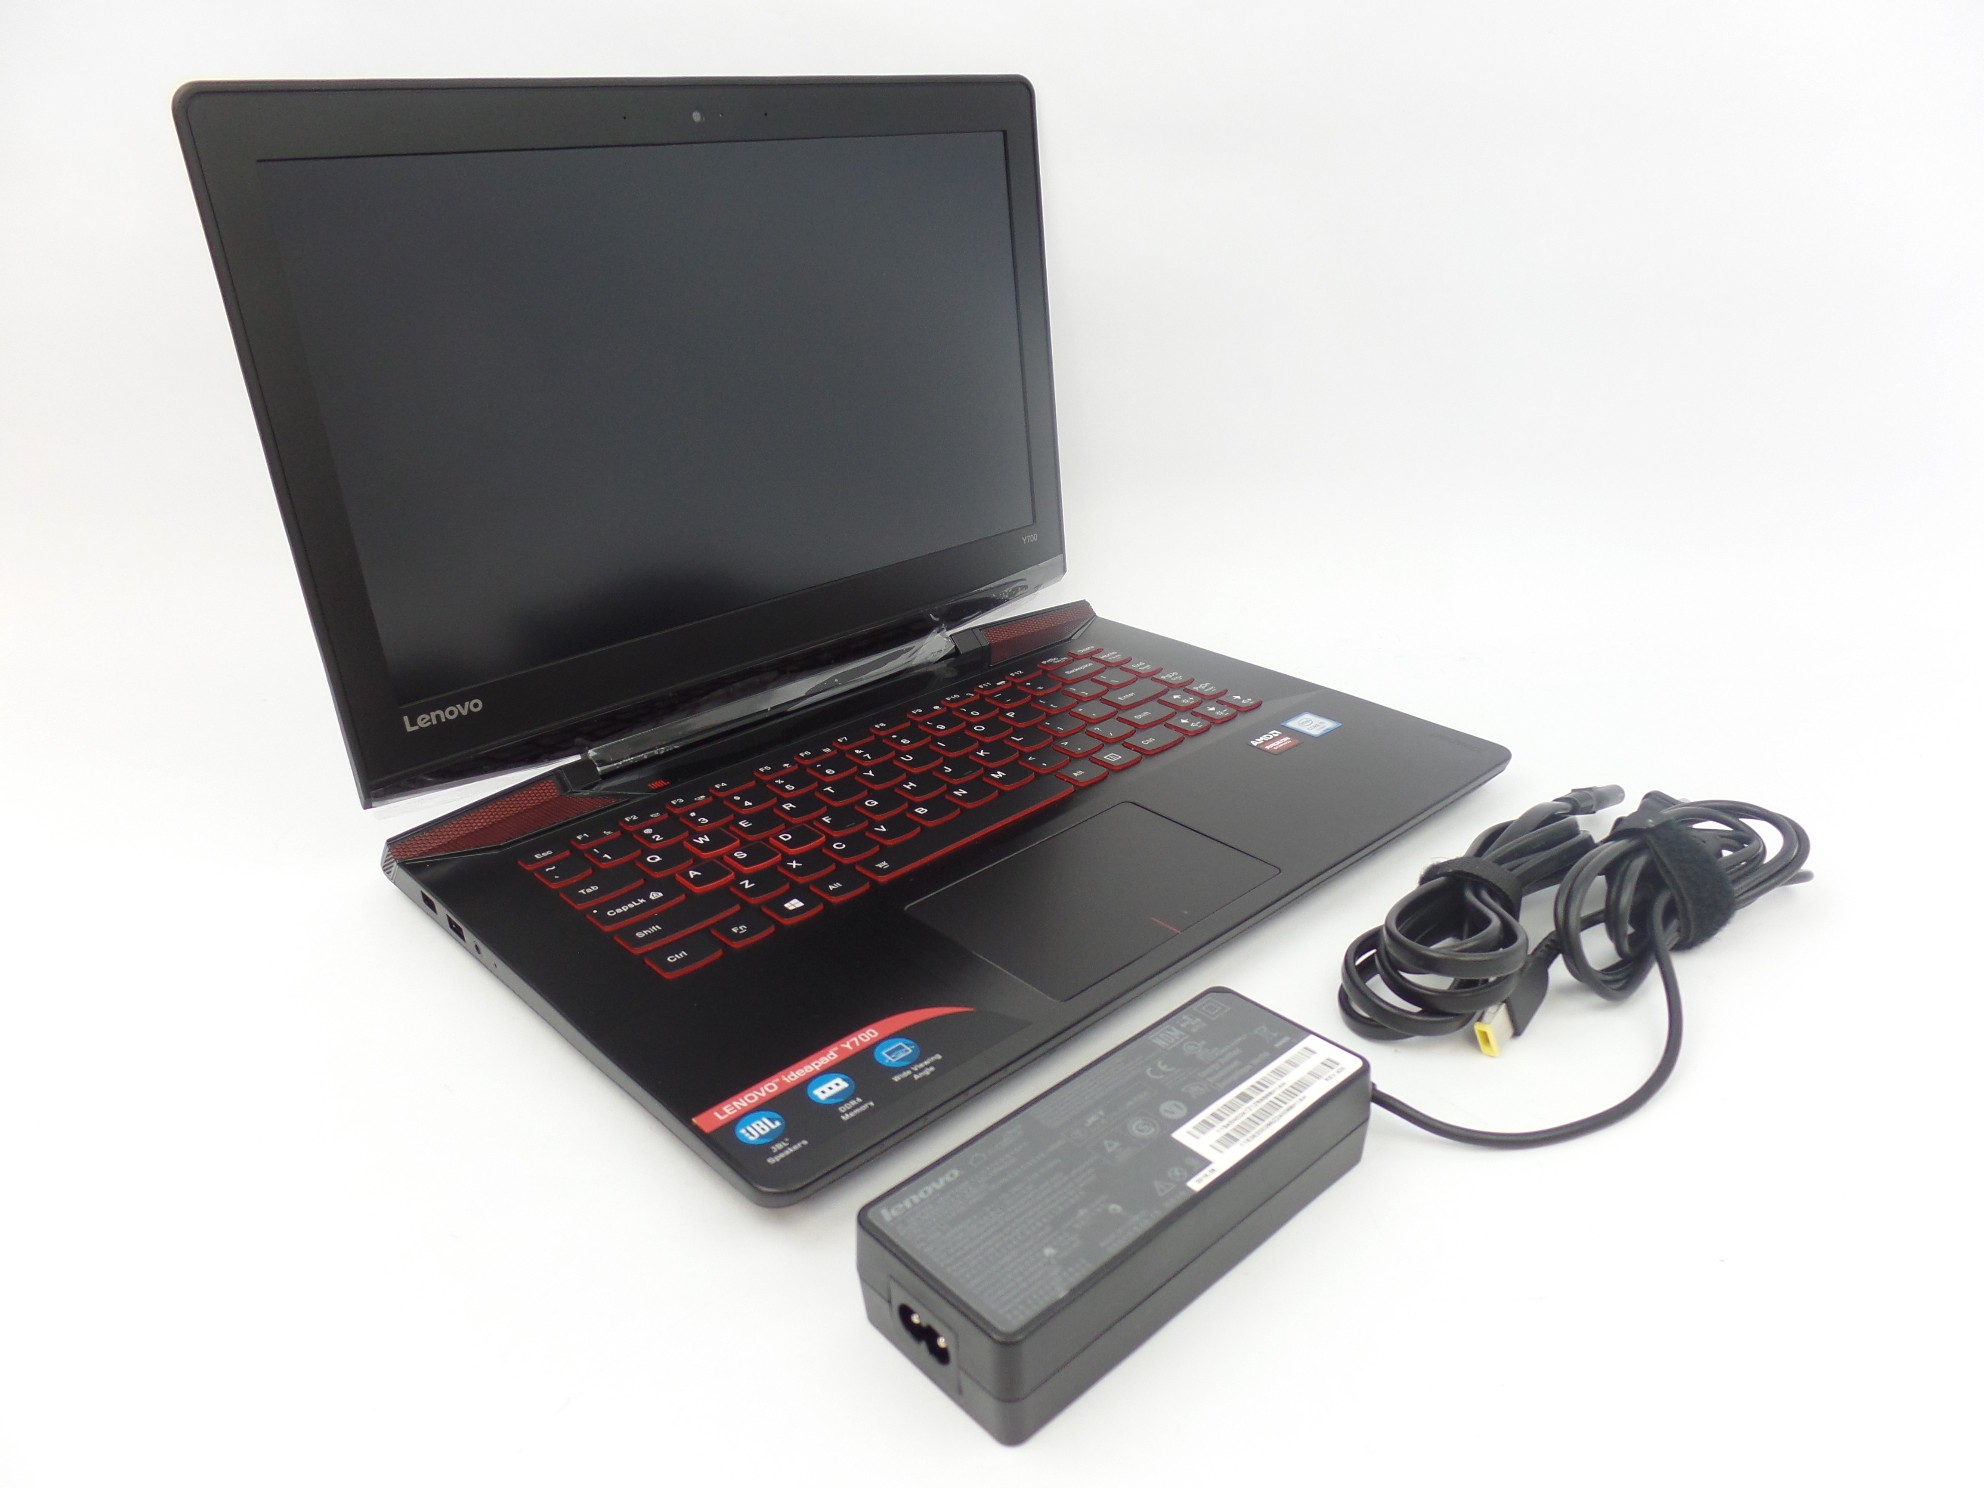 Lenovo Ideapad Y700-14ISK 14" FHD i5-6300HQ 8GB 256GB SSD R9 M375 4GB VRAM W10H